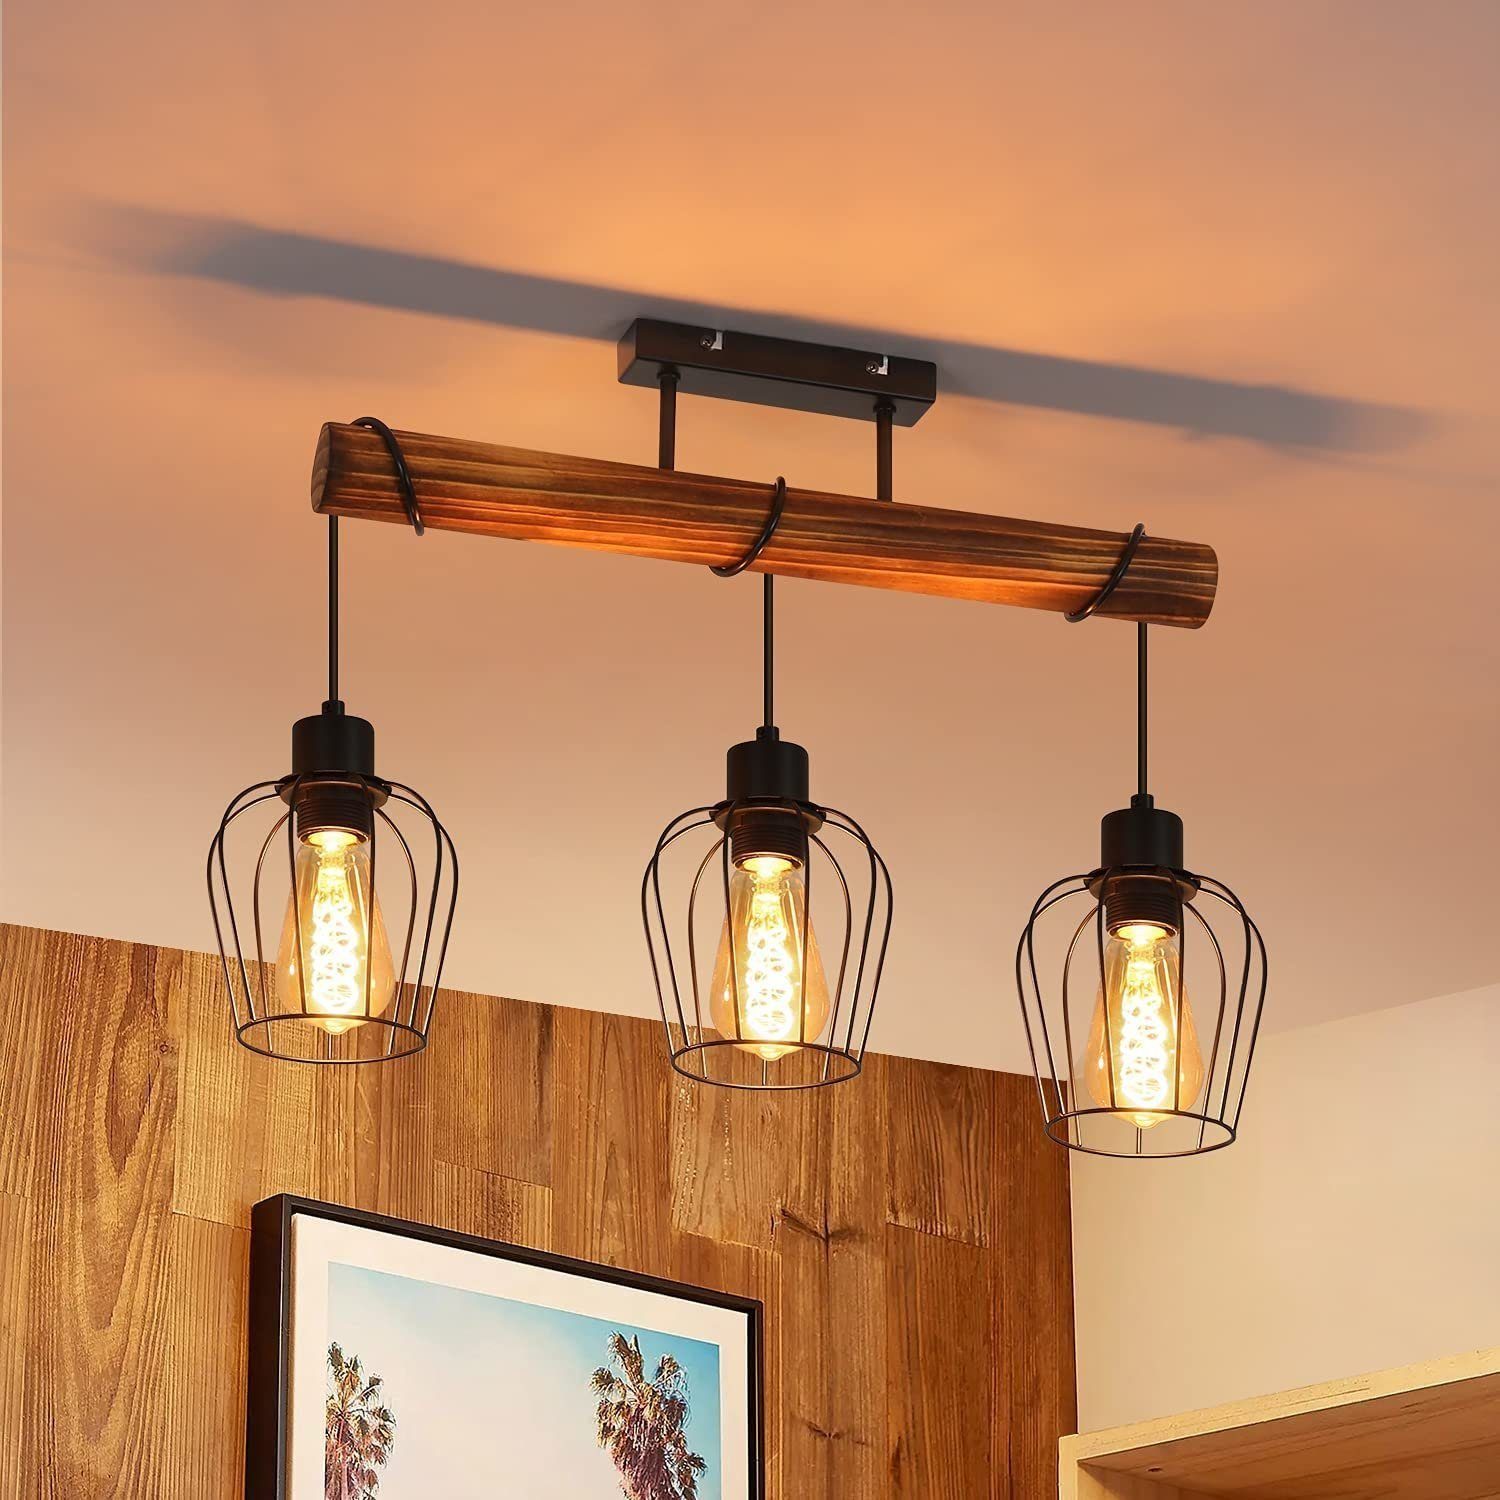 Holzhöhenverstellbar, Deckenleuchte mit Kabel wechselbar Retro Nettlife LED E27 3 flammige